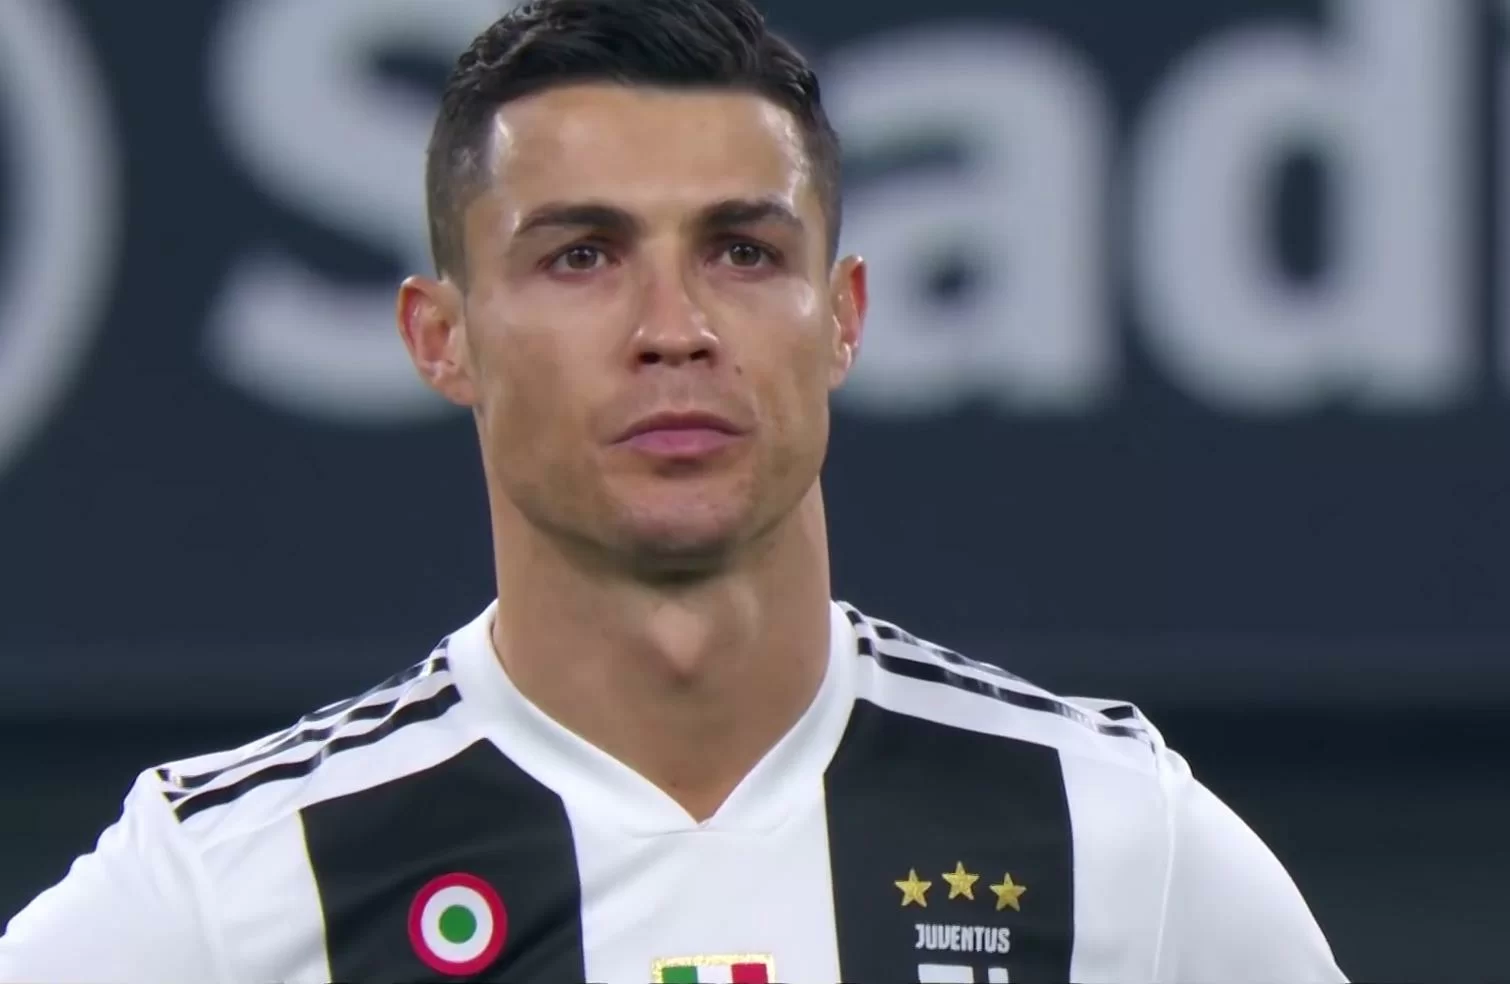 Bookmakers britannici aprono le quote sull’addio di Ronaldo a fine stagione